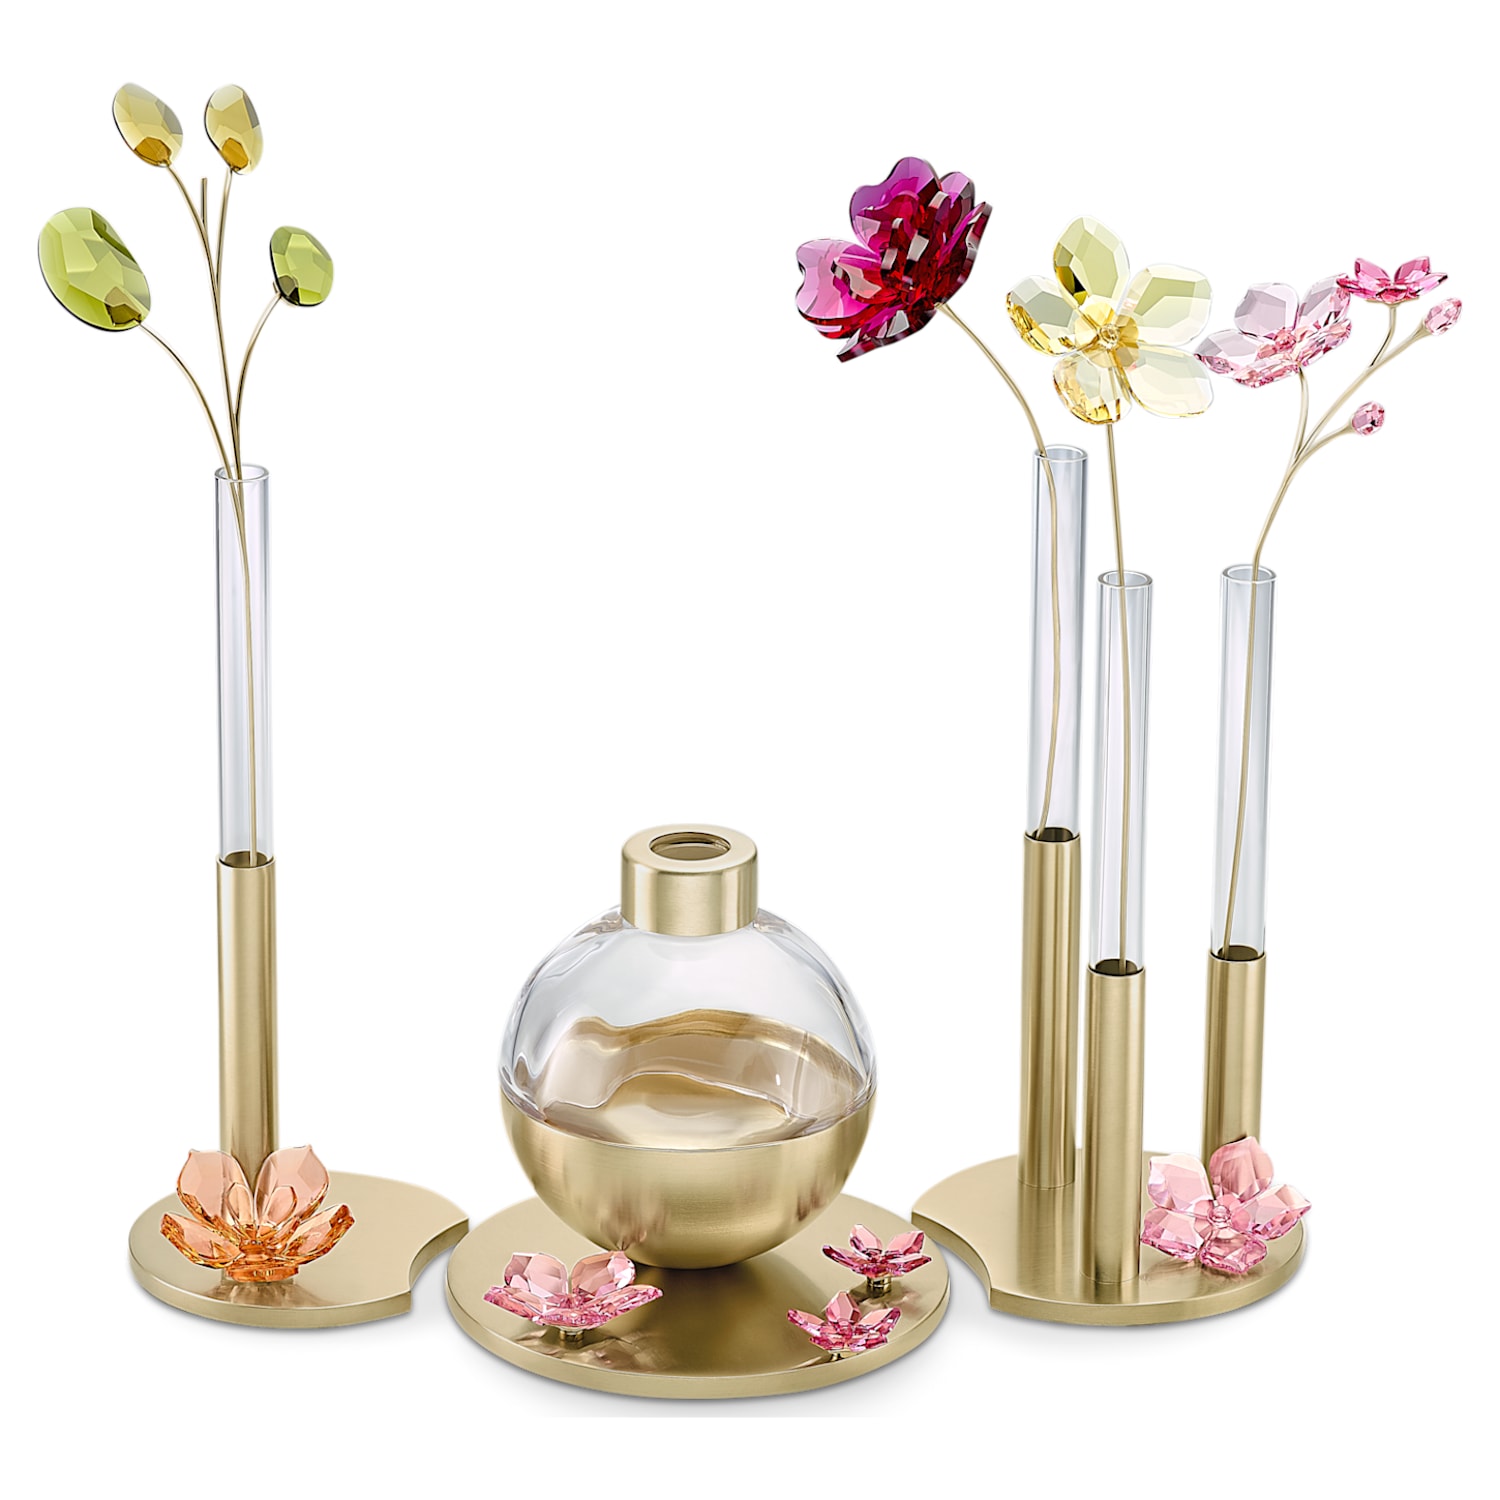 スワロフスキークリスタル シェルベース フラワーベース 花瓶 - 花瓶 ...